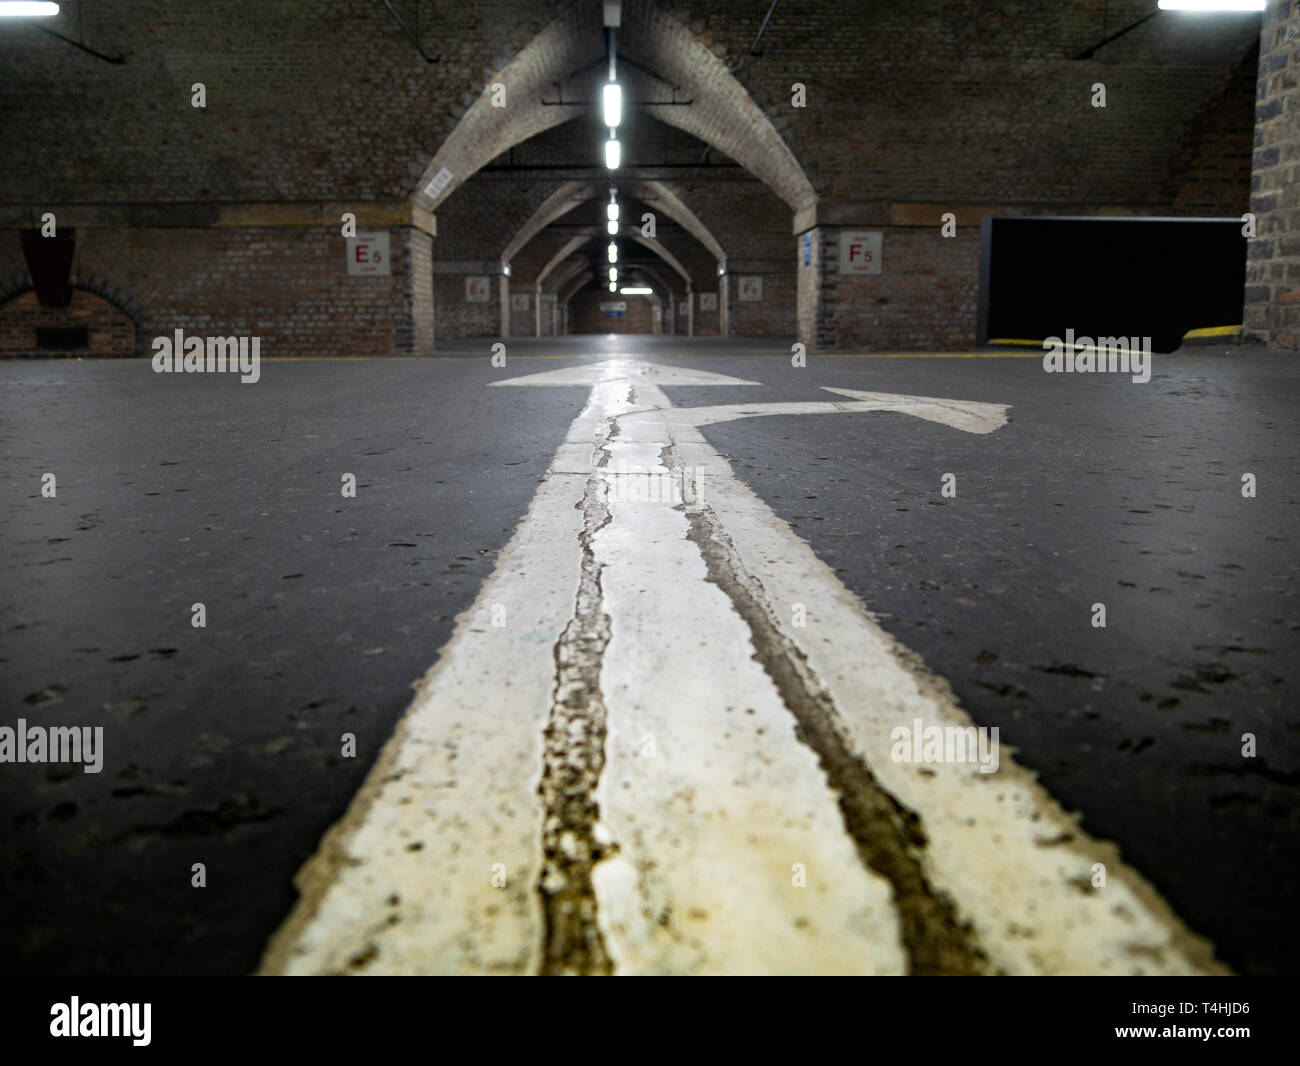 Vue de bas niveau, parking souterrain, Manchester, UK Banque D'Images